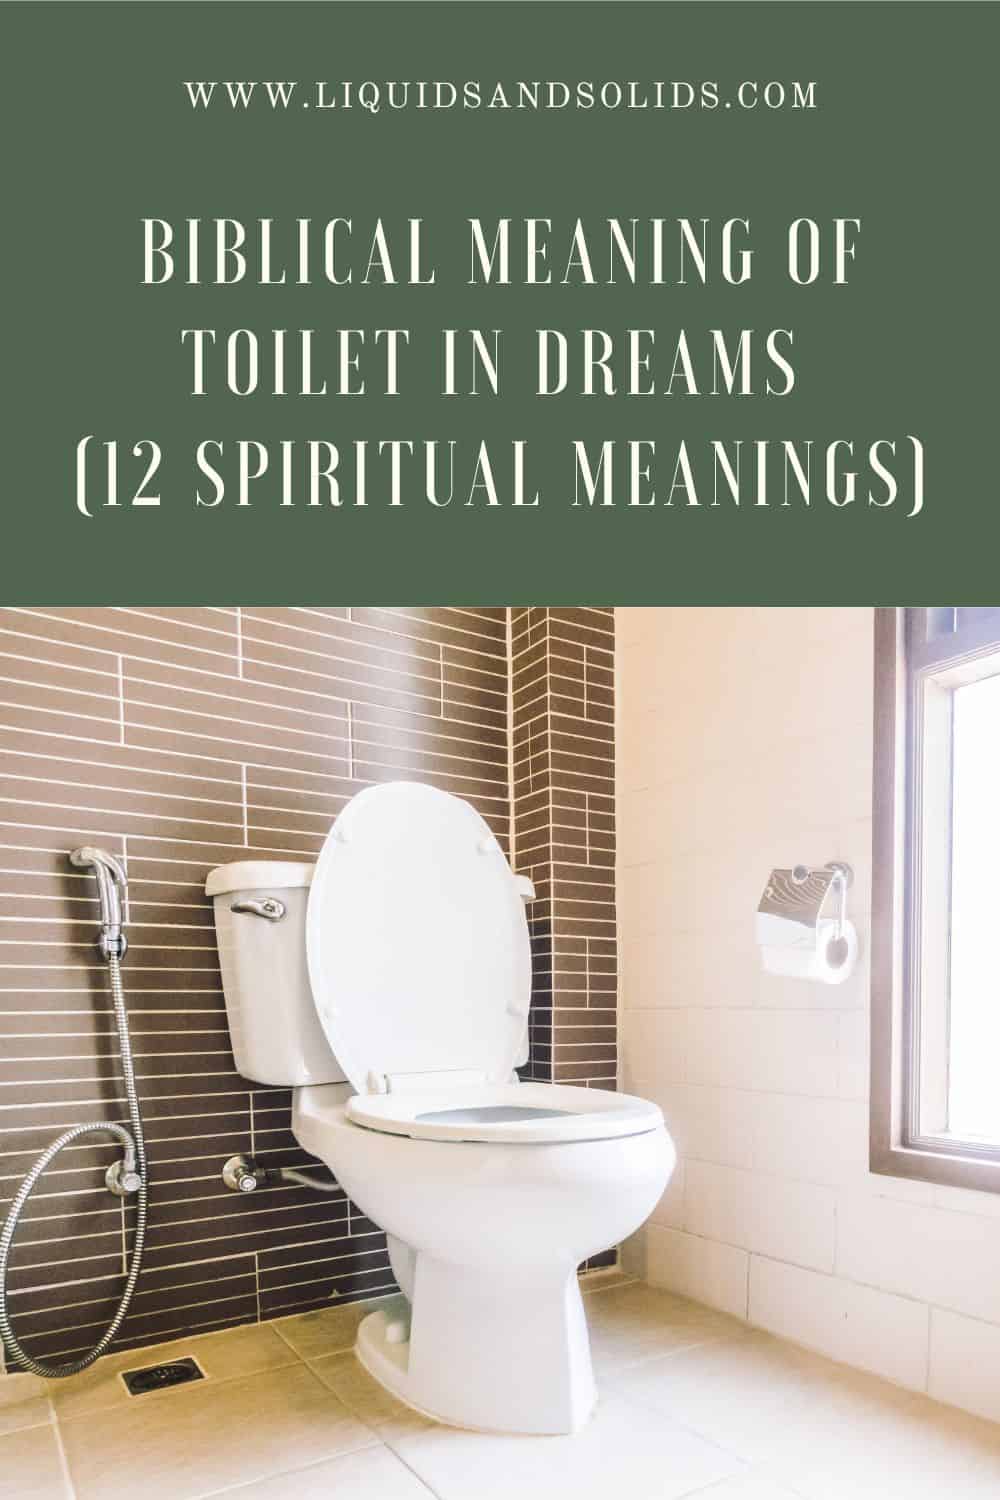  11 ရေချိုးခန်းအိပ်မက်အဓိပ္ပာယ်